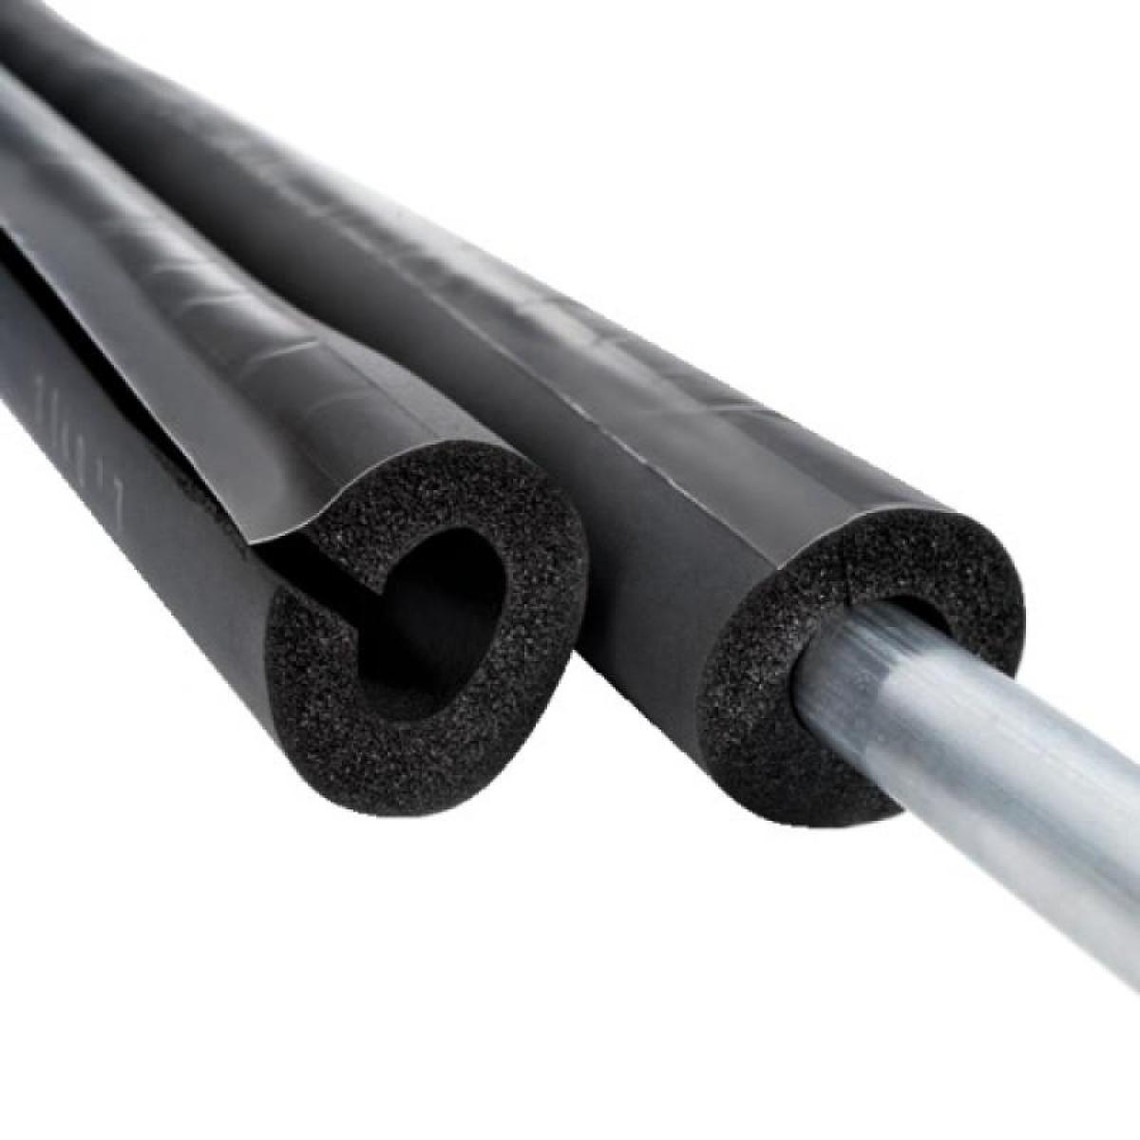 Tous types d'isolants et laine de verre NMC Tubes isolants fendus Insul tube lap épaisseur 32 mm longueur 2 m pour tuyaux diamètre 18 mm carton de 32 m